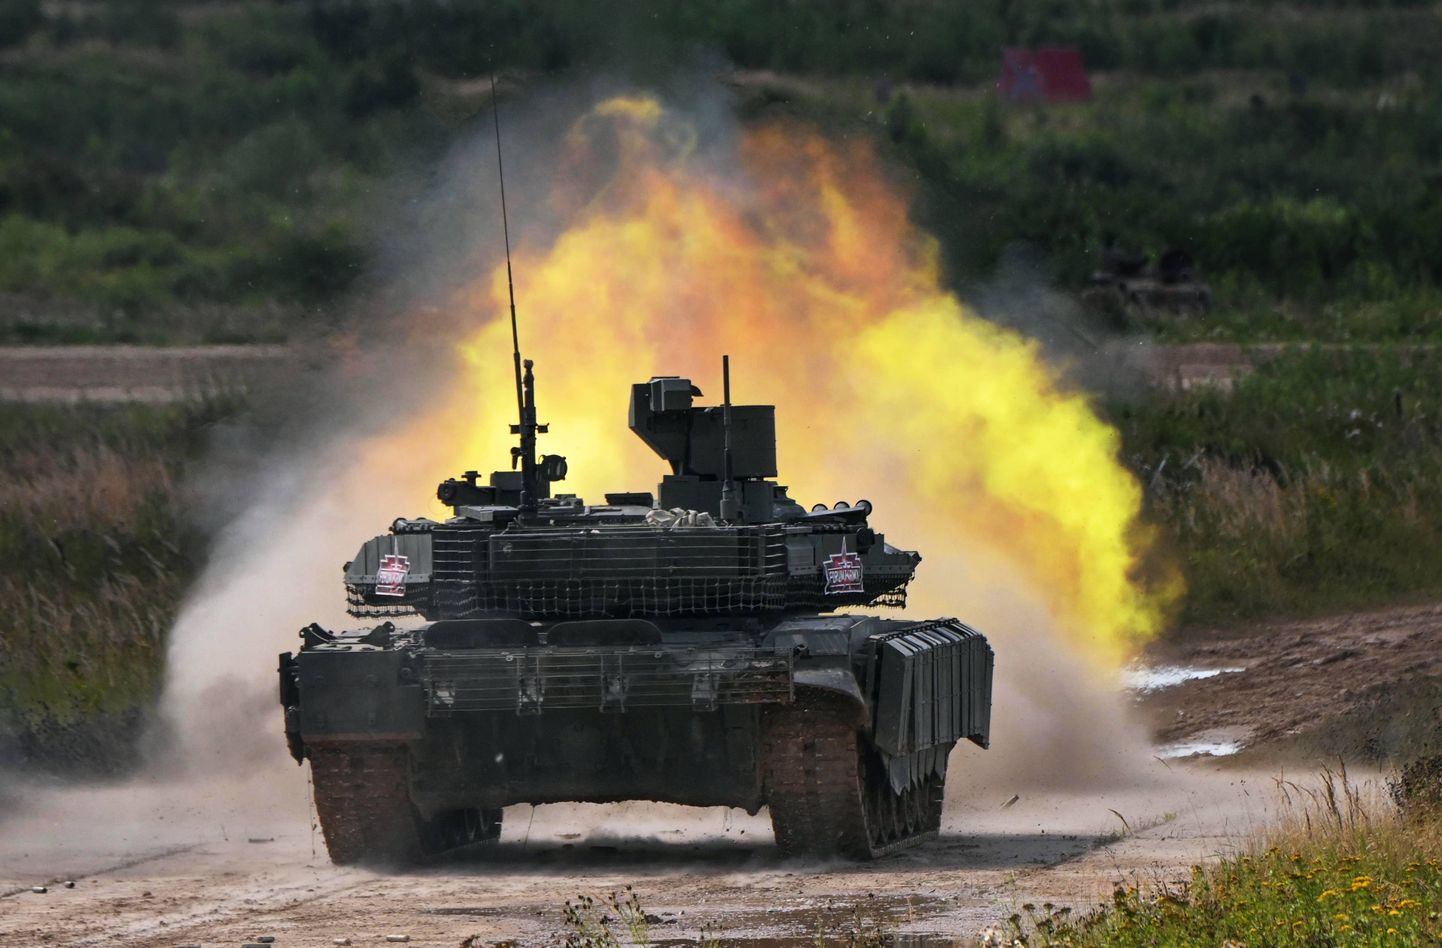 Venemaa moodsat tanki T-90M toodetakse Uuralites küll rekordkogustes, aga sellest ei jätku kaotuste kompenseerimiseks. Mängu tulevad veel 60 aastat vanad lahingumasinad, millele pannakse peale kolmandate riikide kaudu smugeldatud moodsat tehnikat.